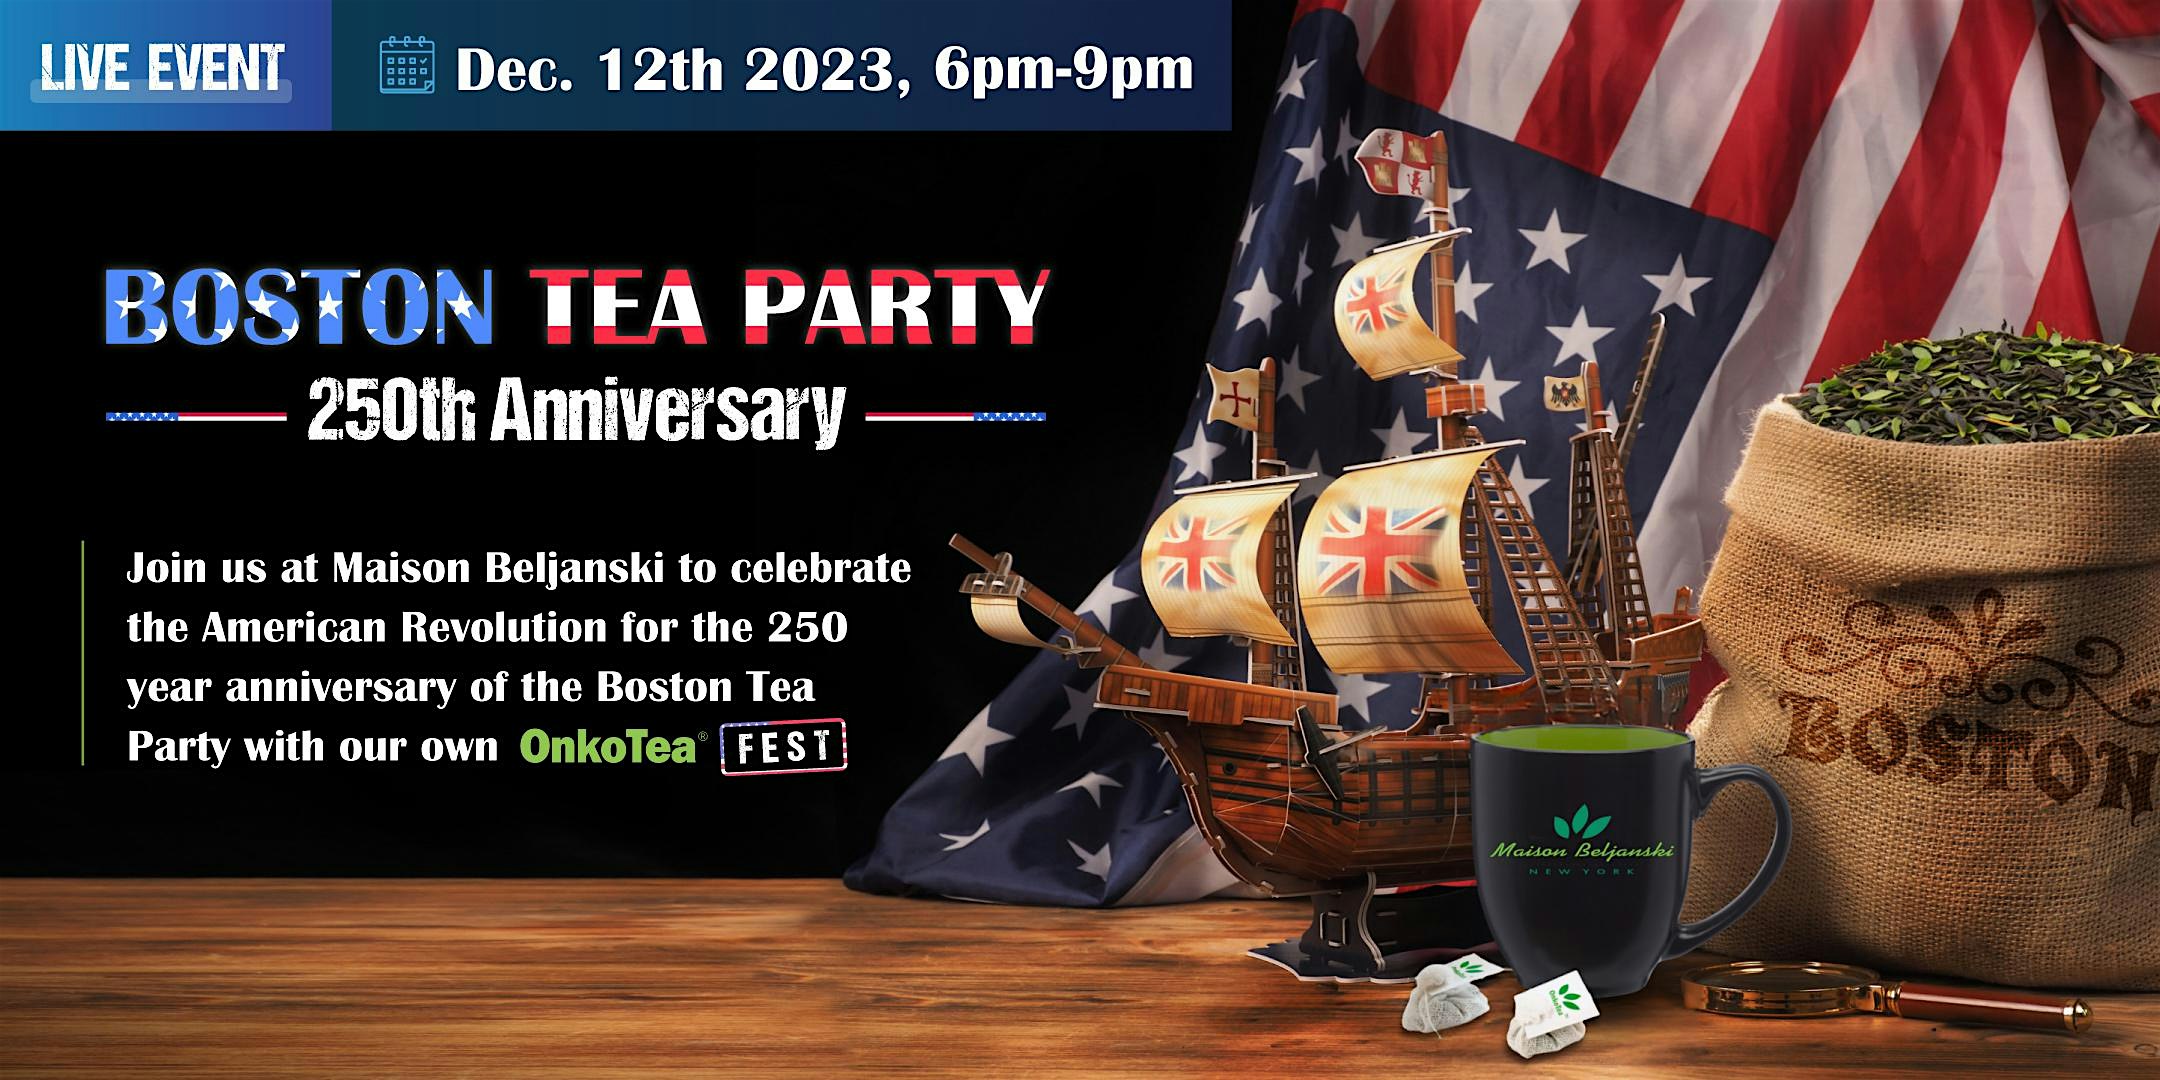 Boston Tea Party/OnkoTea Fest